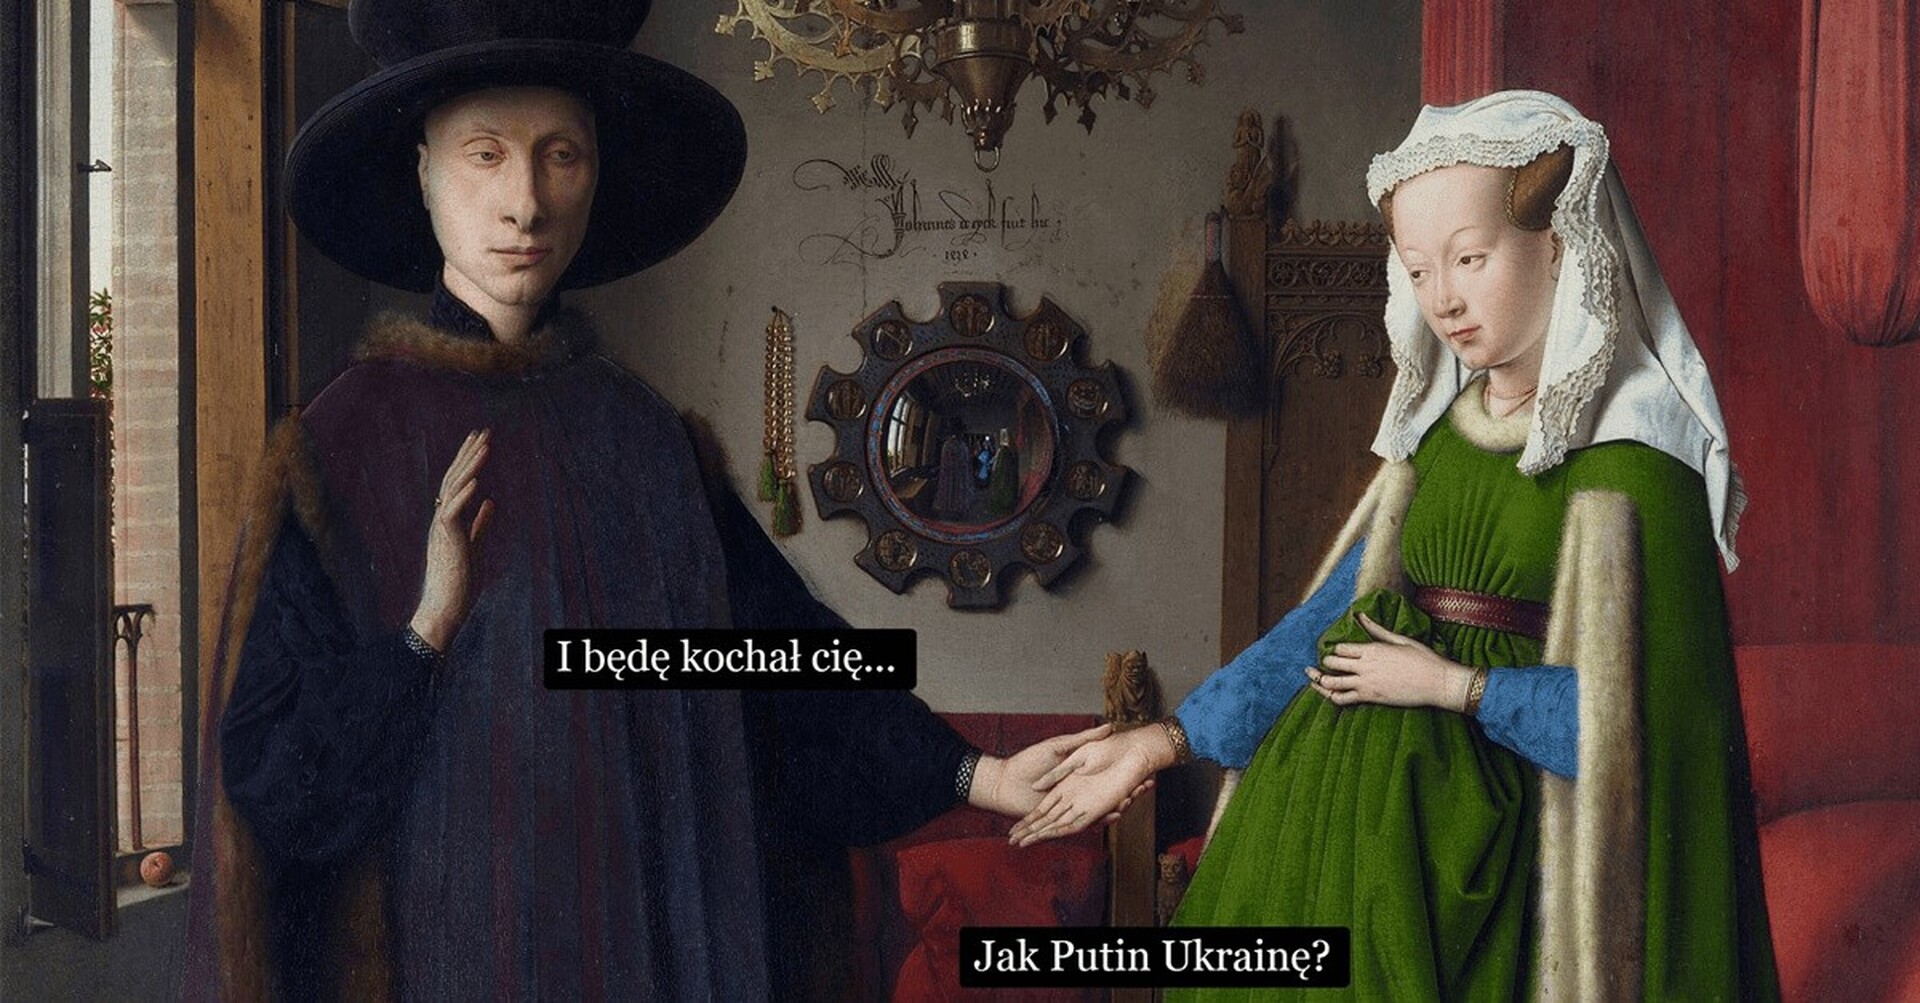  Fragment obrazu „Portret małżonków Arnolfinich” Jana van Eycka przerobiony na mem. Do obrazu został dodane napisy sugerujące wymianę zdań między parą. Mężczyzna mówi „I będę kochał cię…”, na co kobieta odpowiada „Jak Putin Ukrainę?”. 